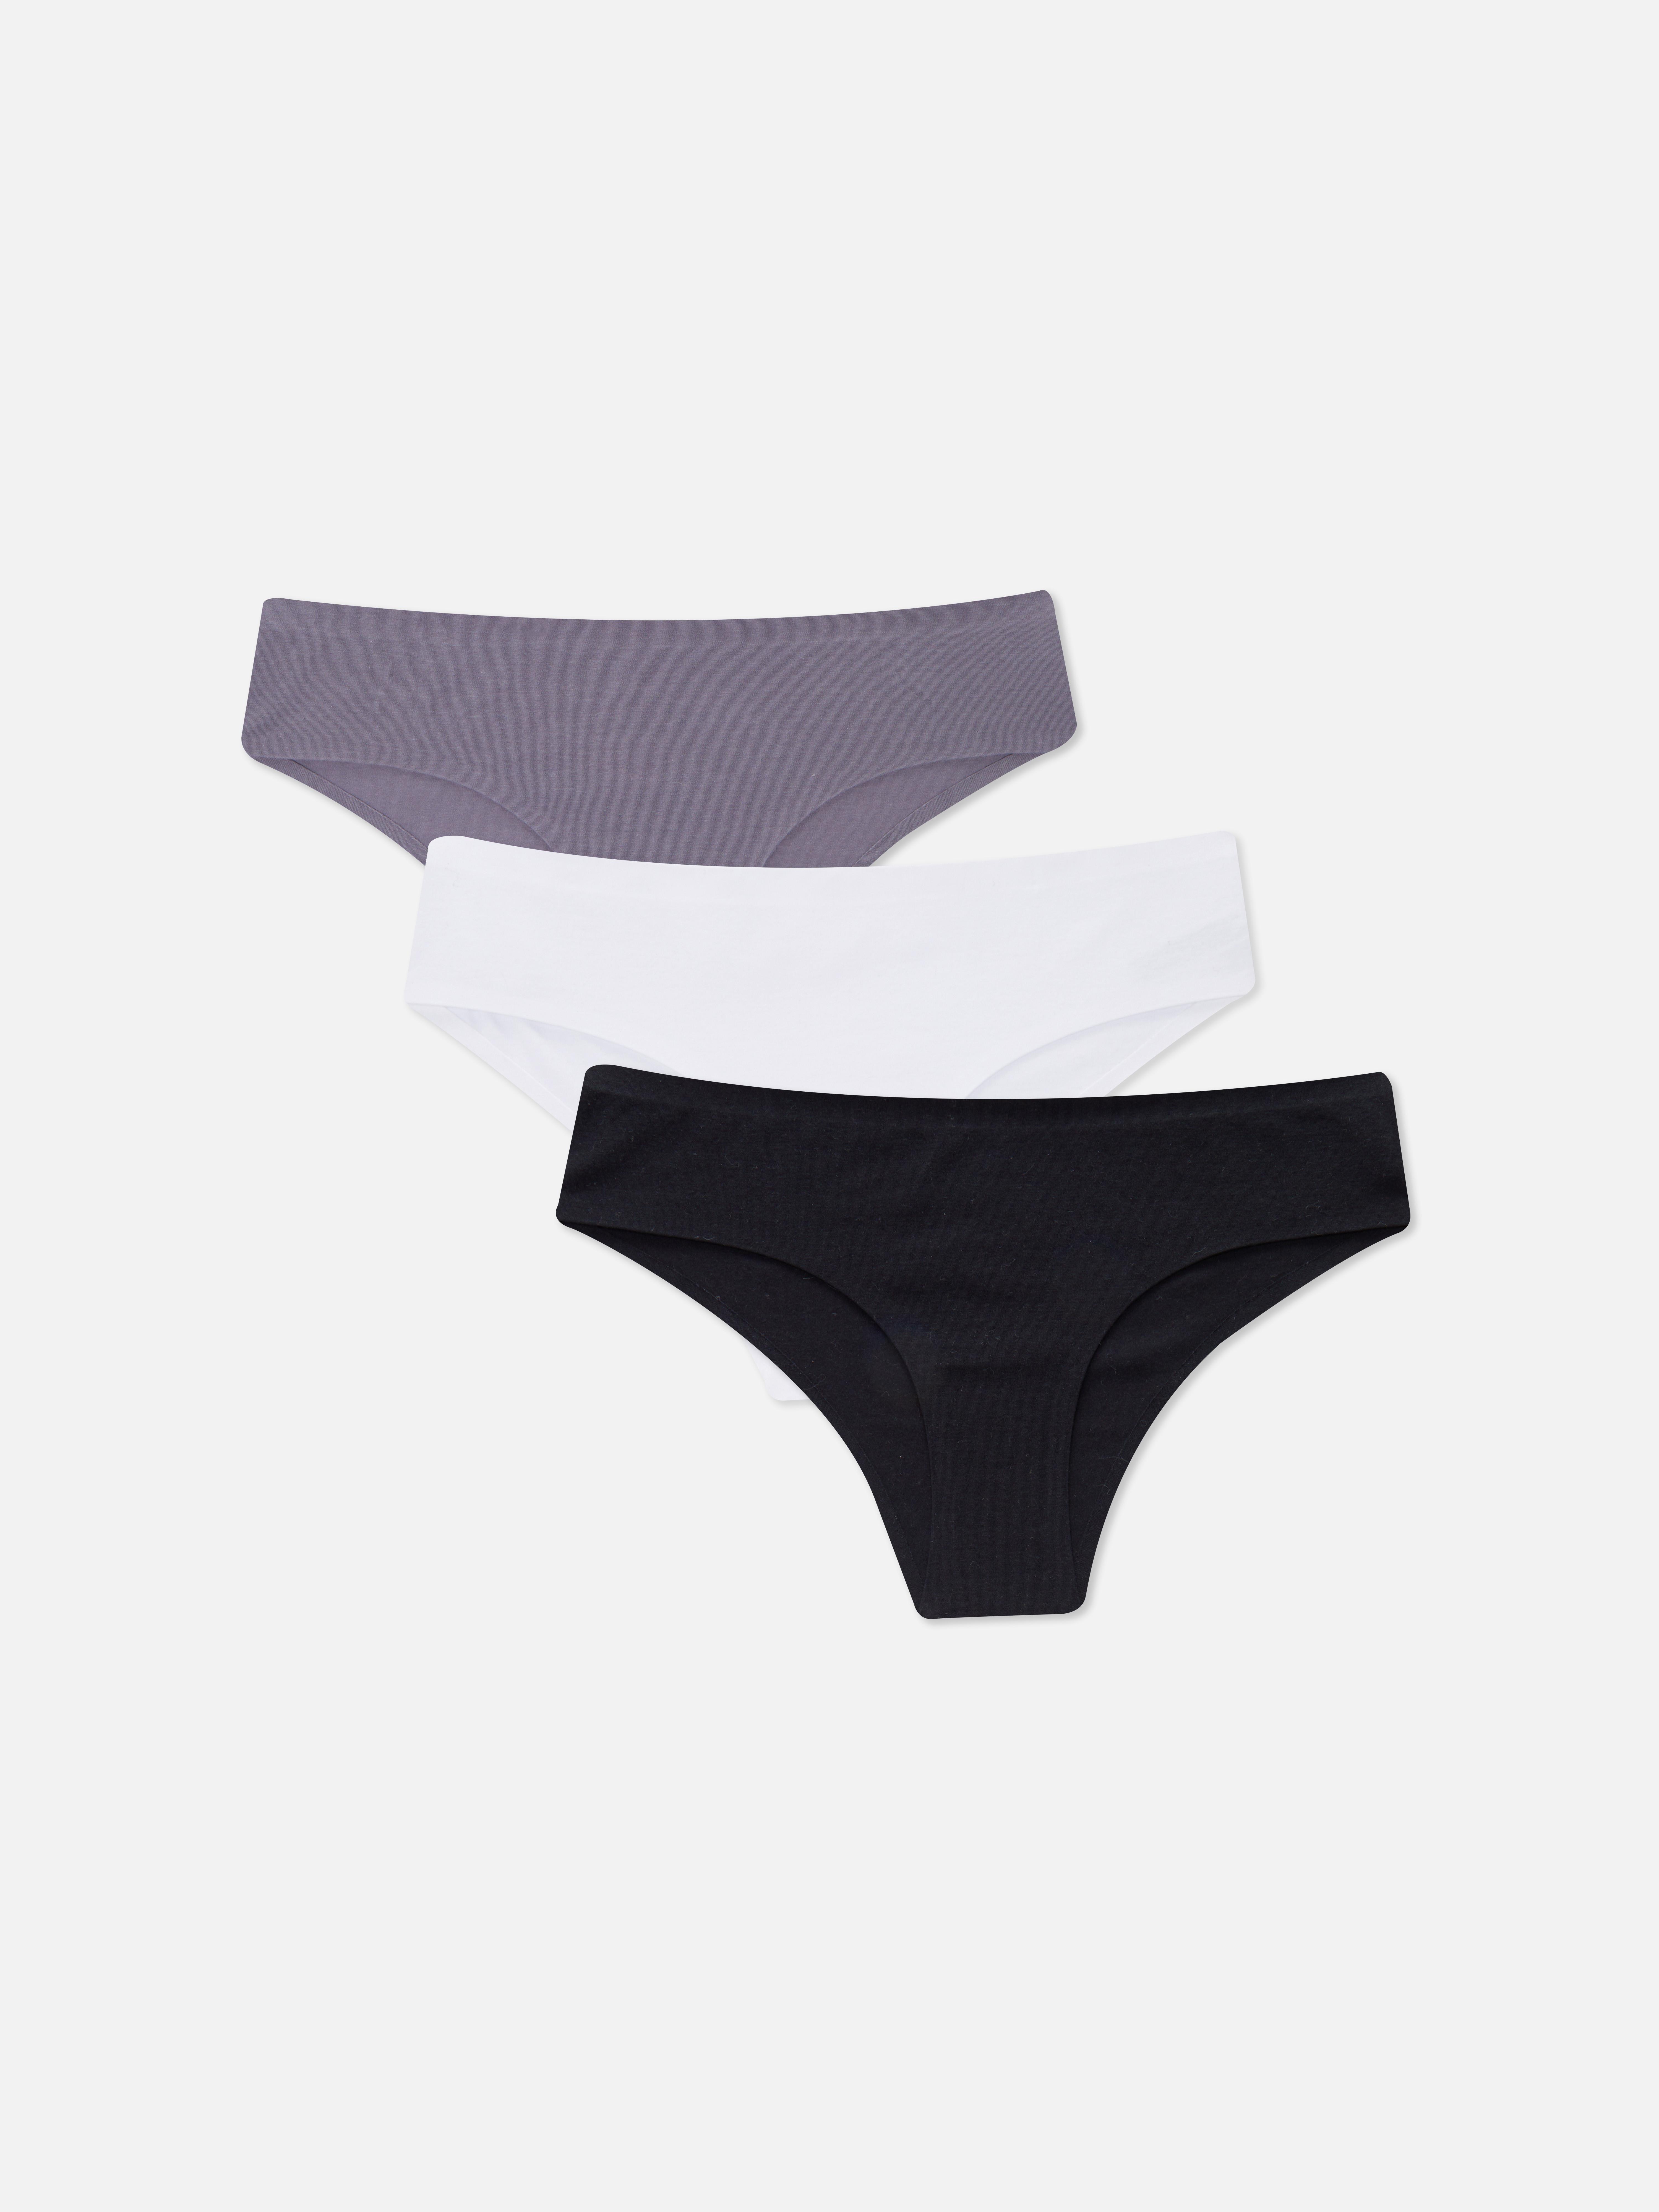 Primark Lacy Black Boyshort/Panties/Underwear-Ladies-Girls-Women